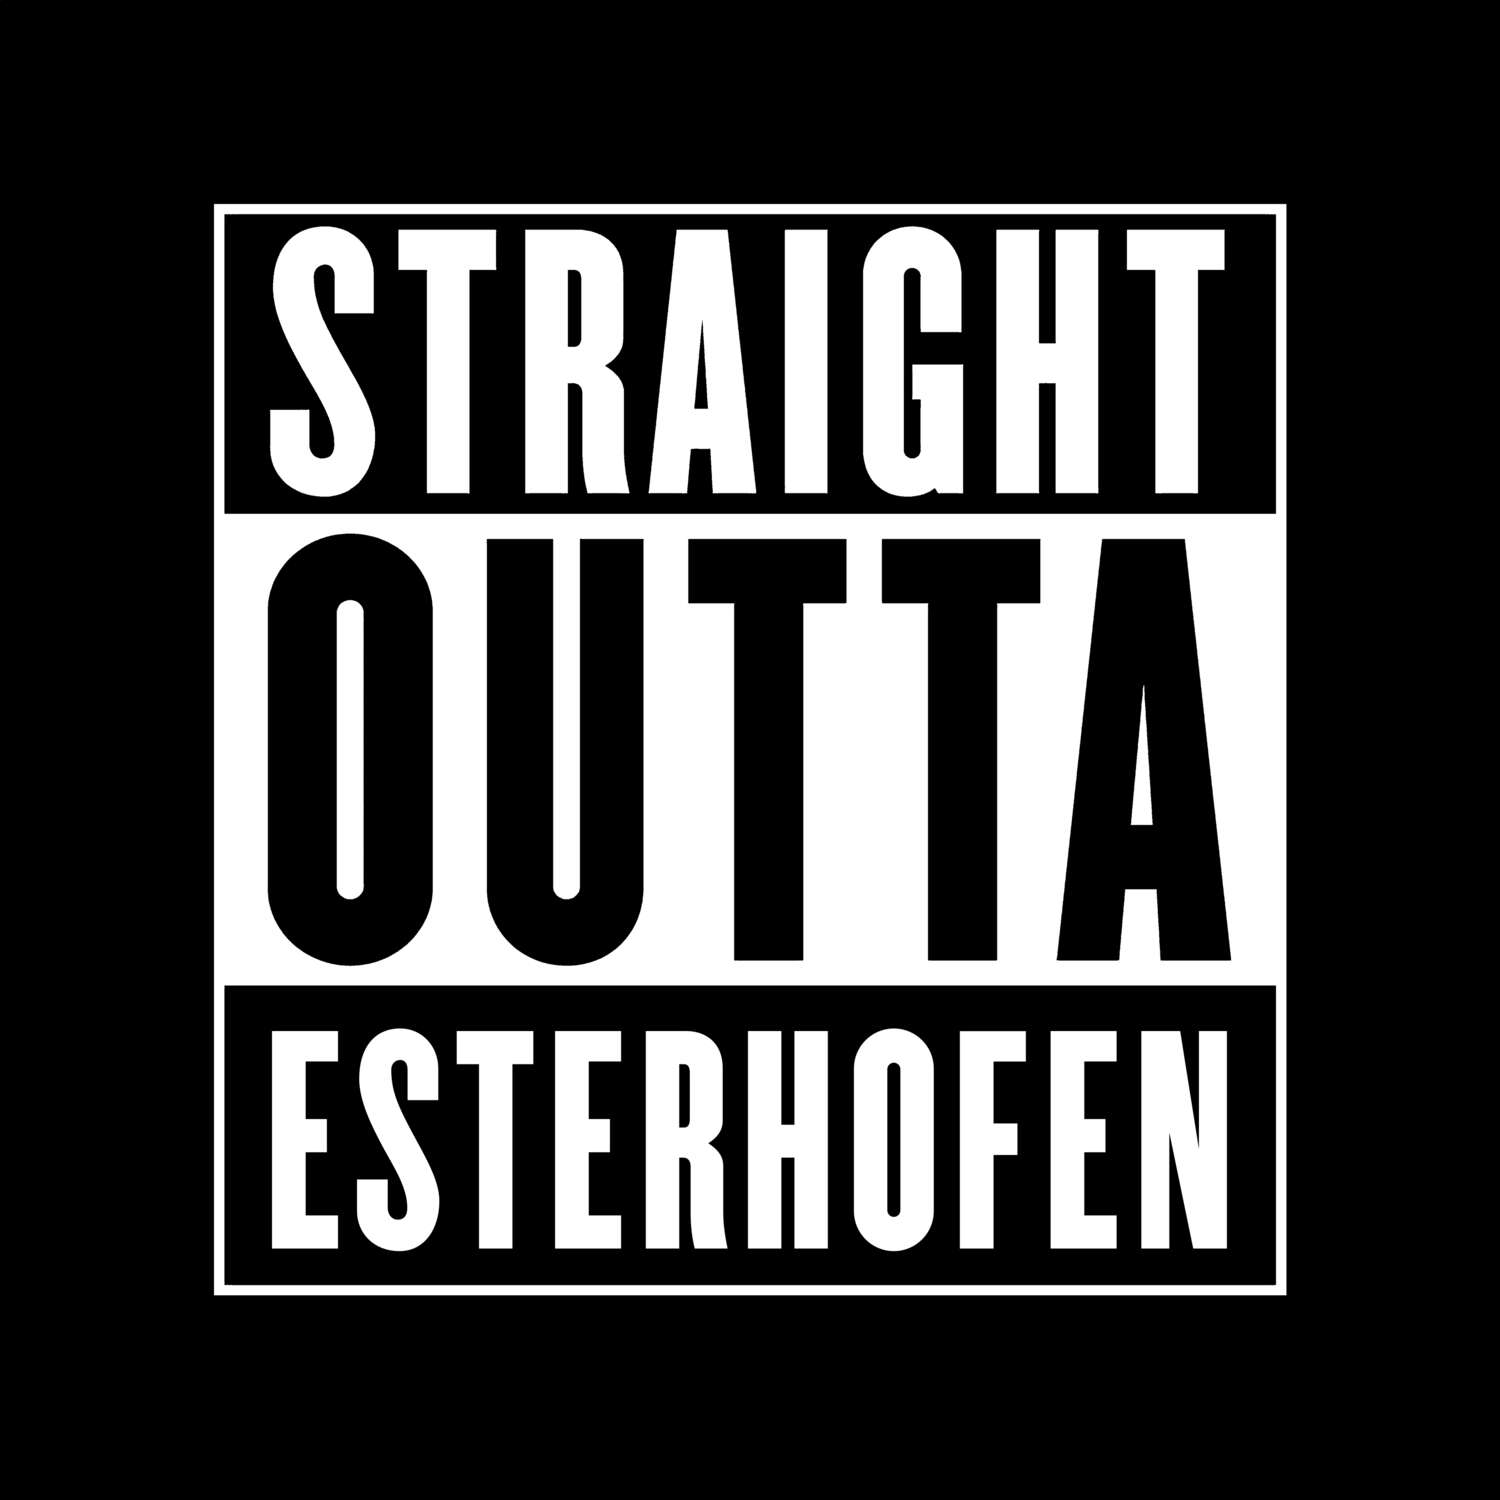 Esterhofen T-Shirt »Straight Outta«